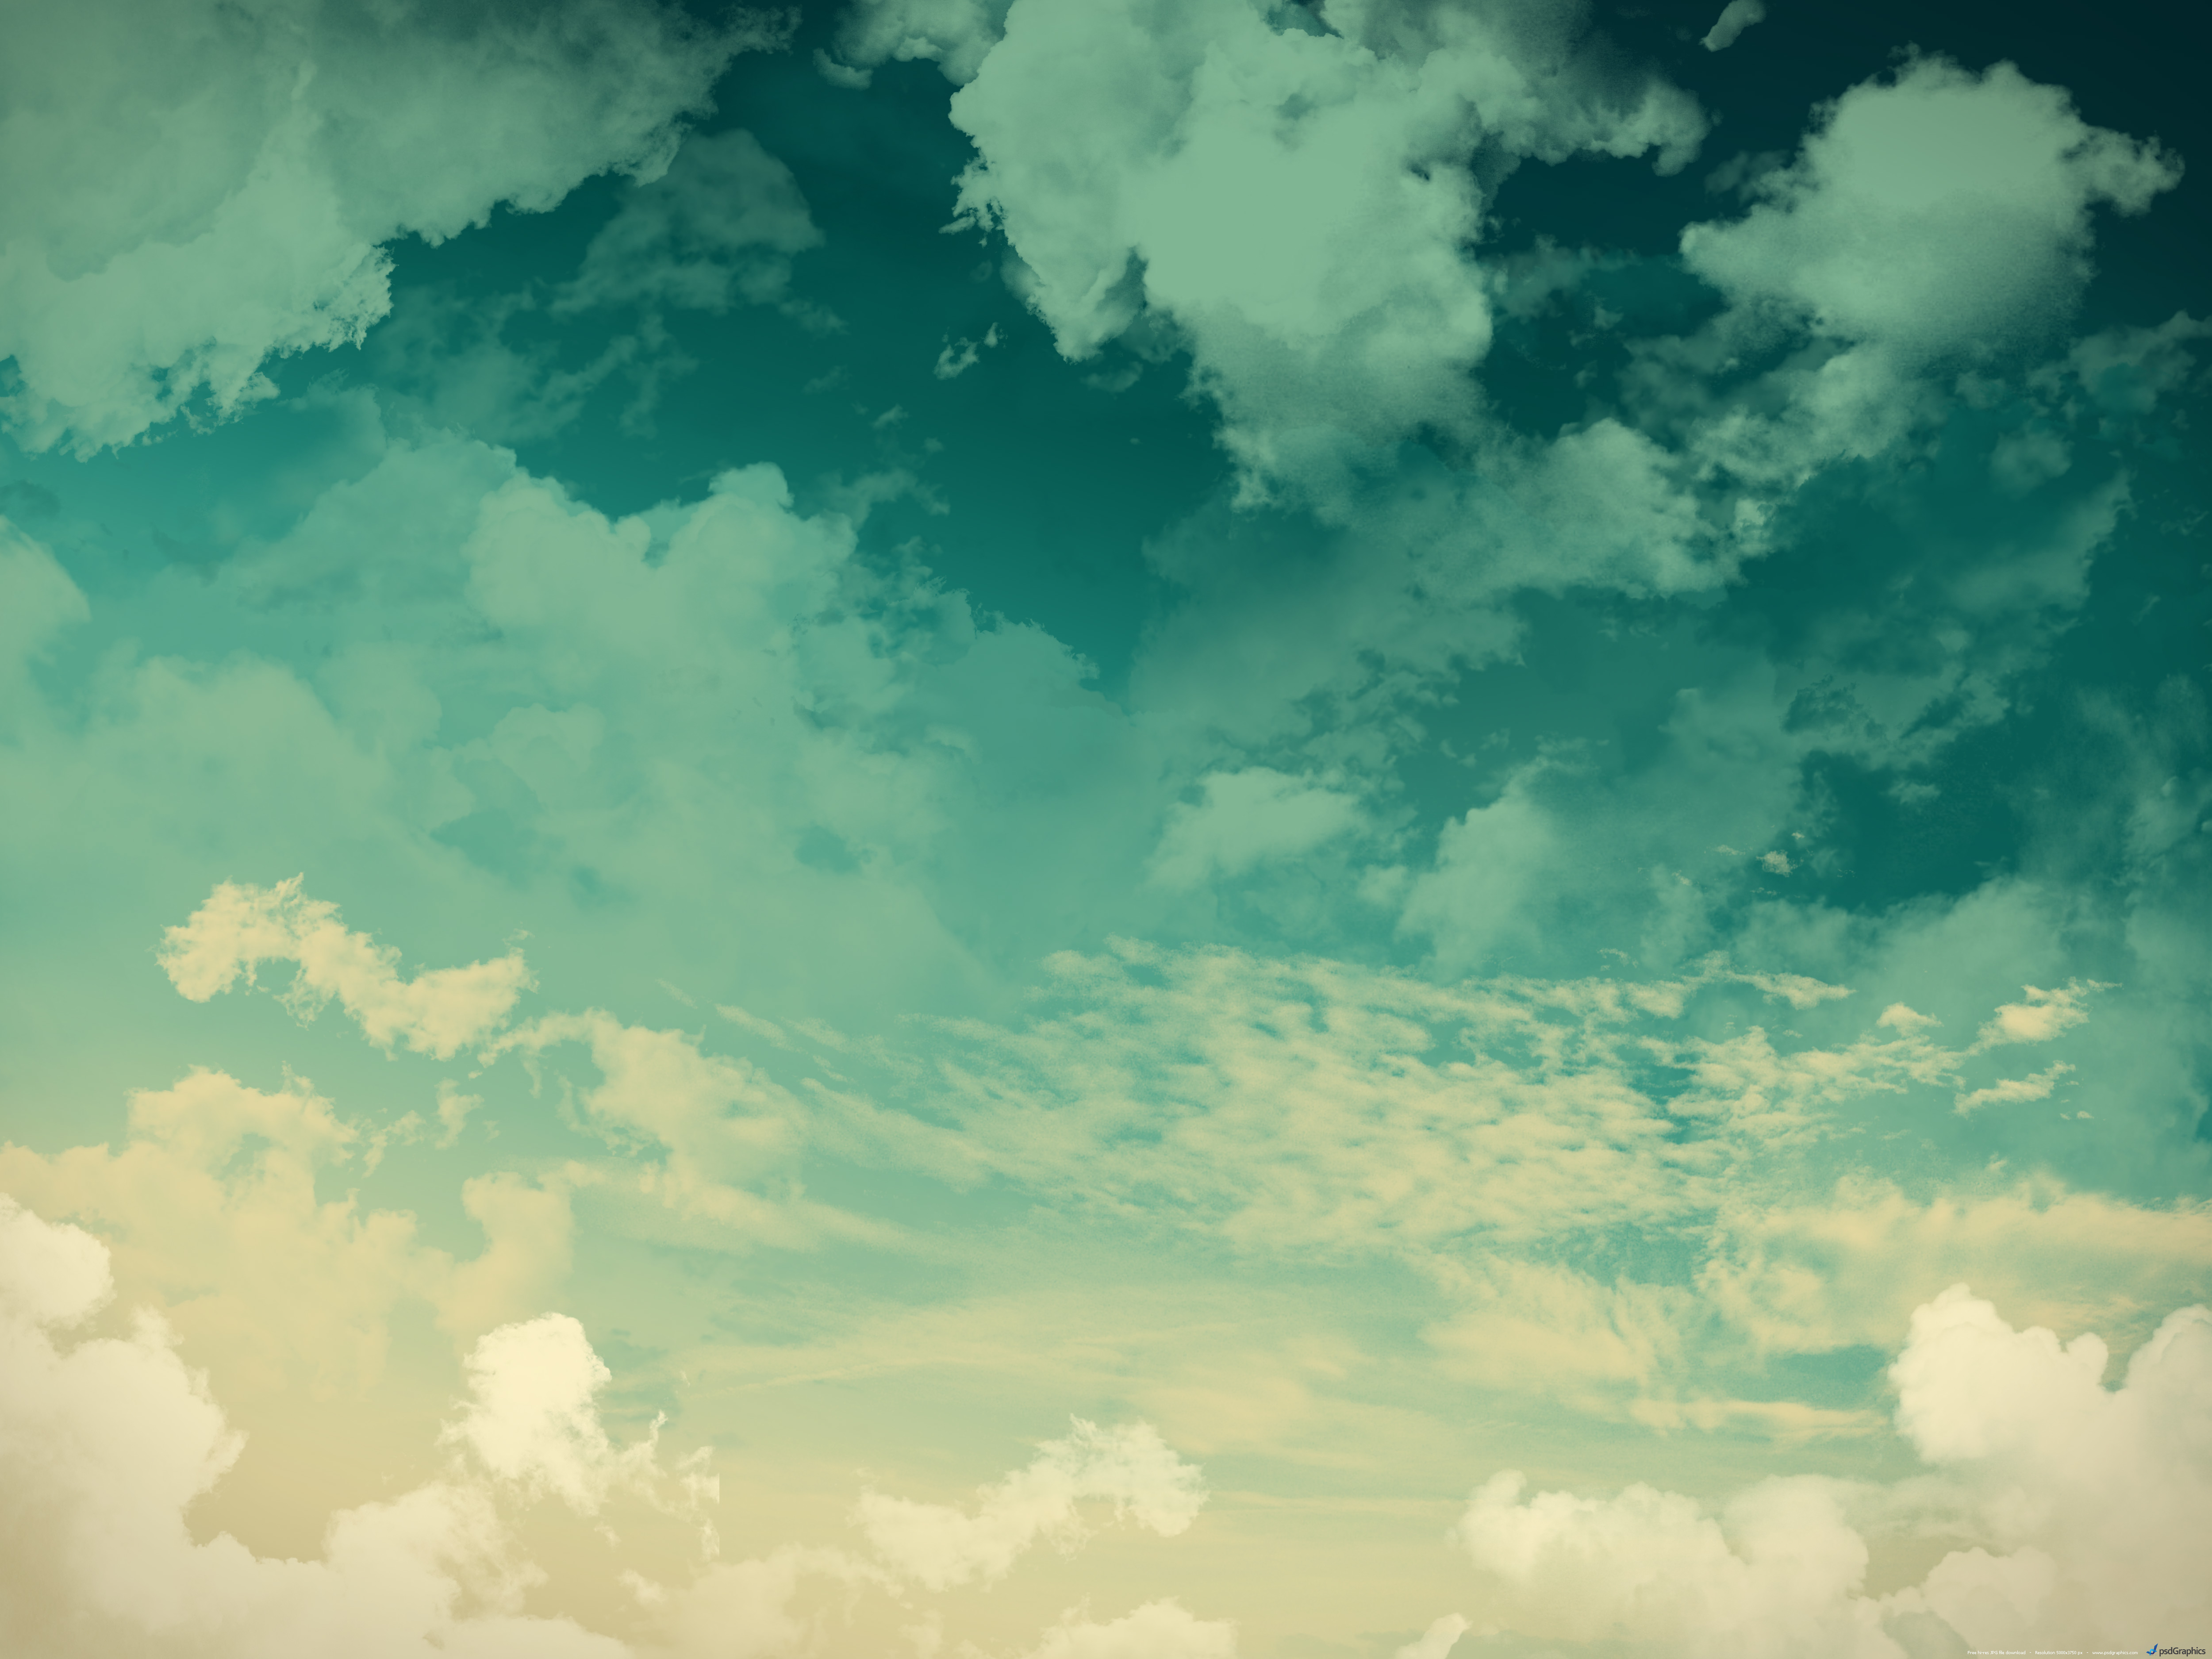 Hình nền mây trắng: Sự bình yên và nguy nga của mây trắng được tái tạo trên màn hình thiết bị của bạn với hình nền mây trắng tuyệt đẹp này. Hãy thả lỏng và tận hưởng vẻ đẹp của bầu trời và cảm nhận sự thanh thản trong tâm hồn của mình. Cảm giác tuyệt vời khi trở về với thiên nhiên.